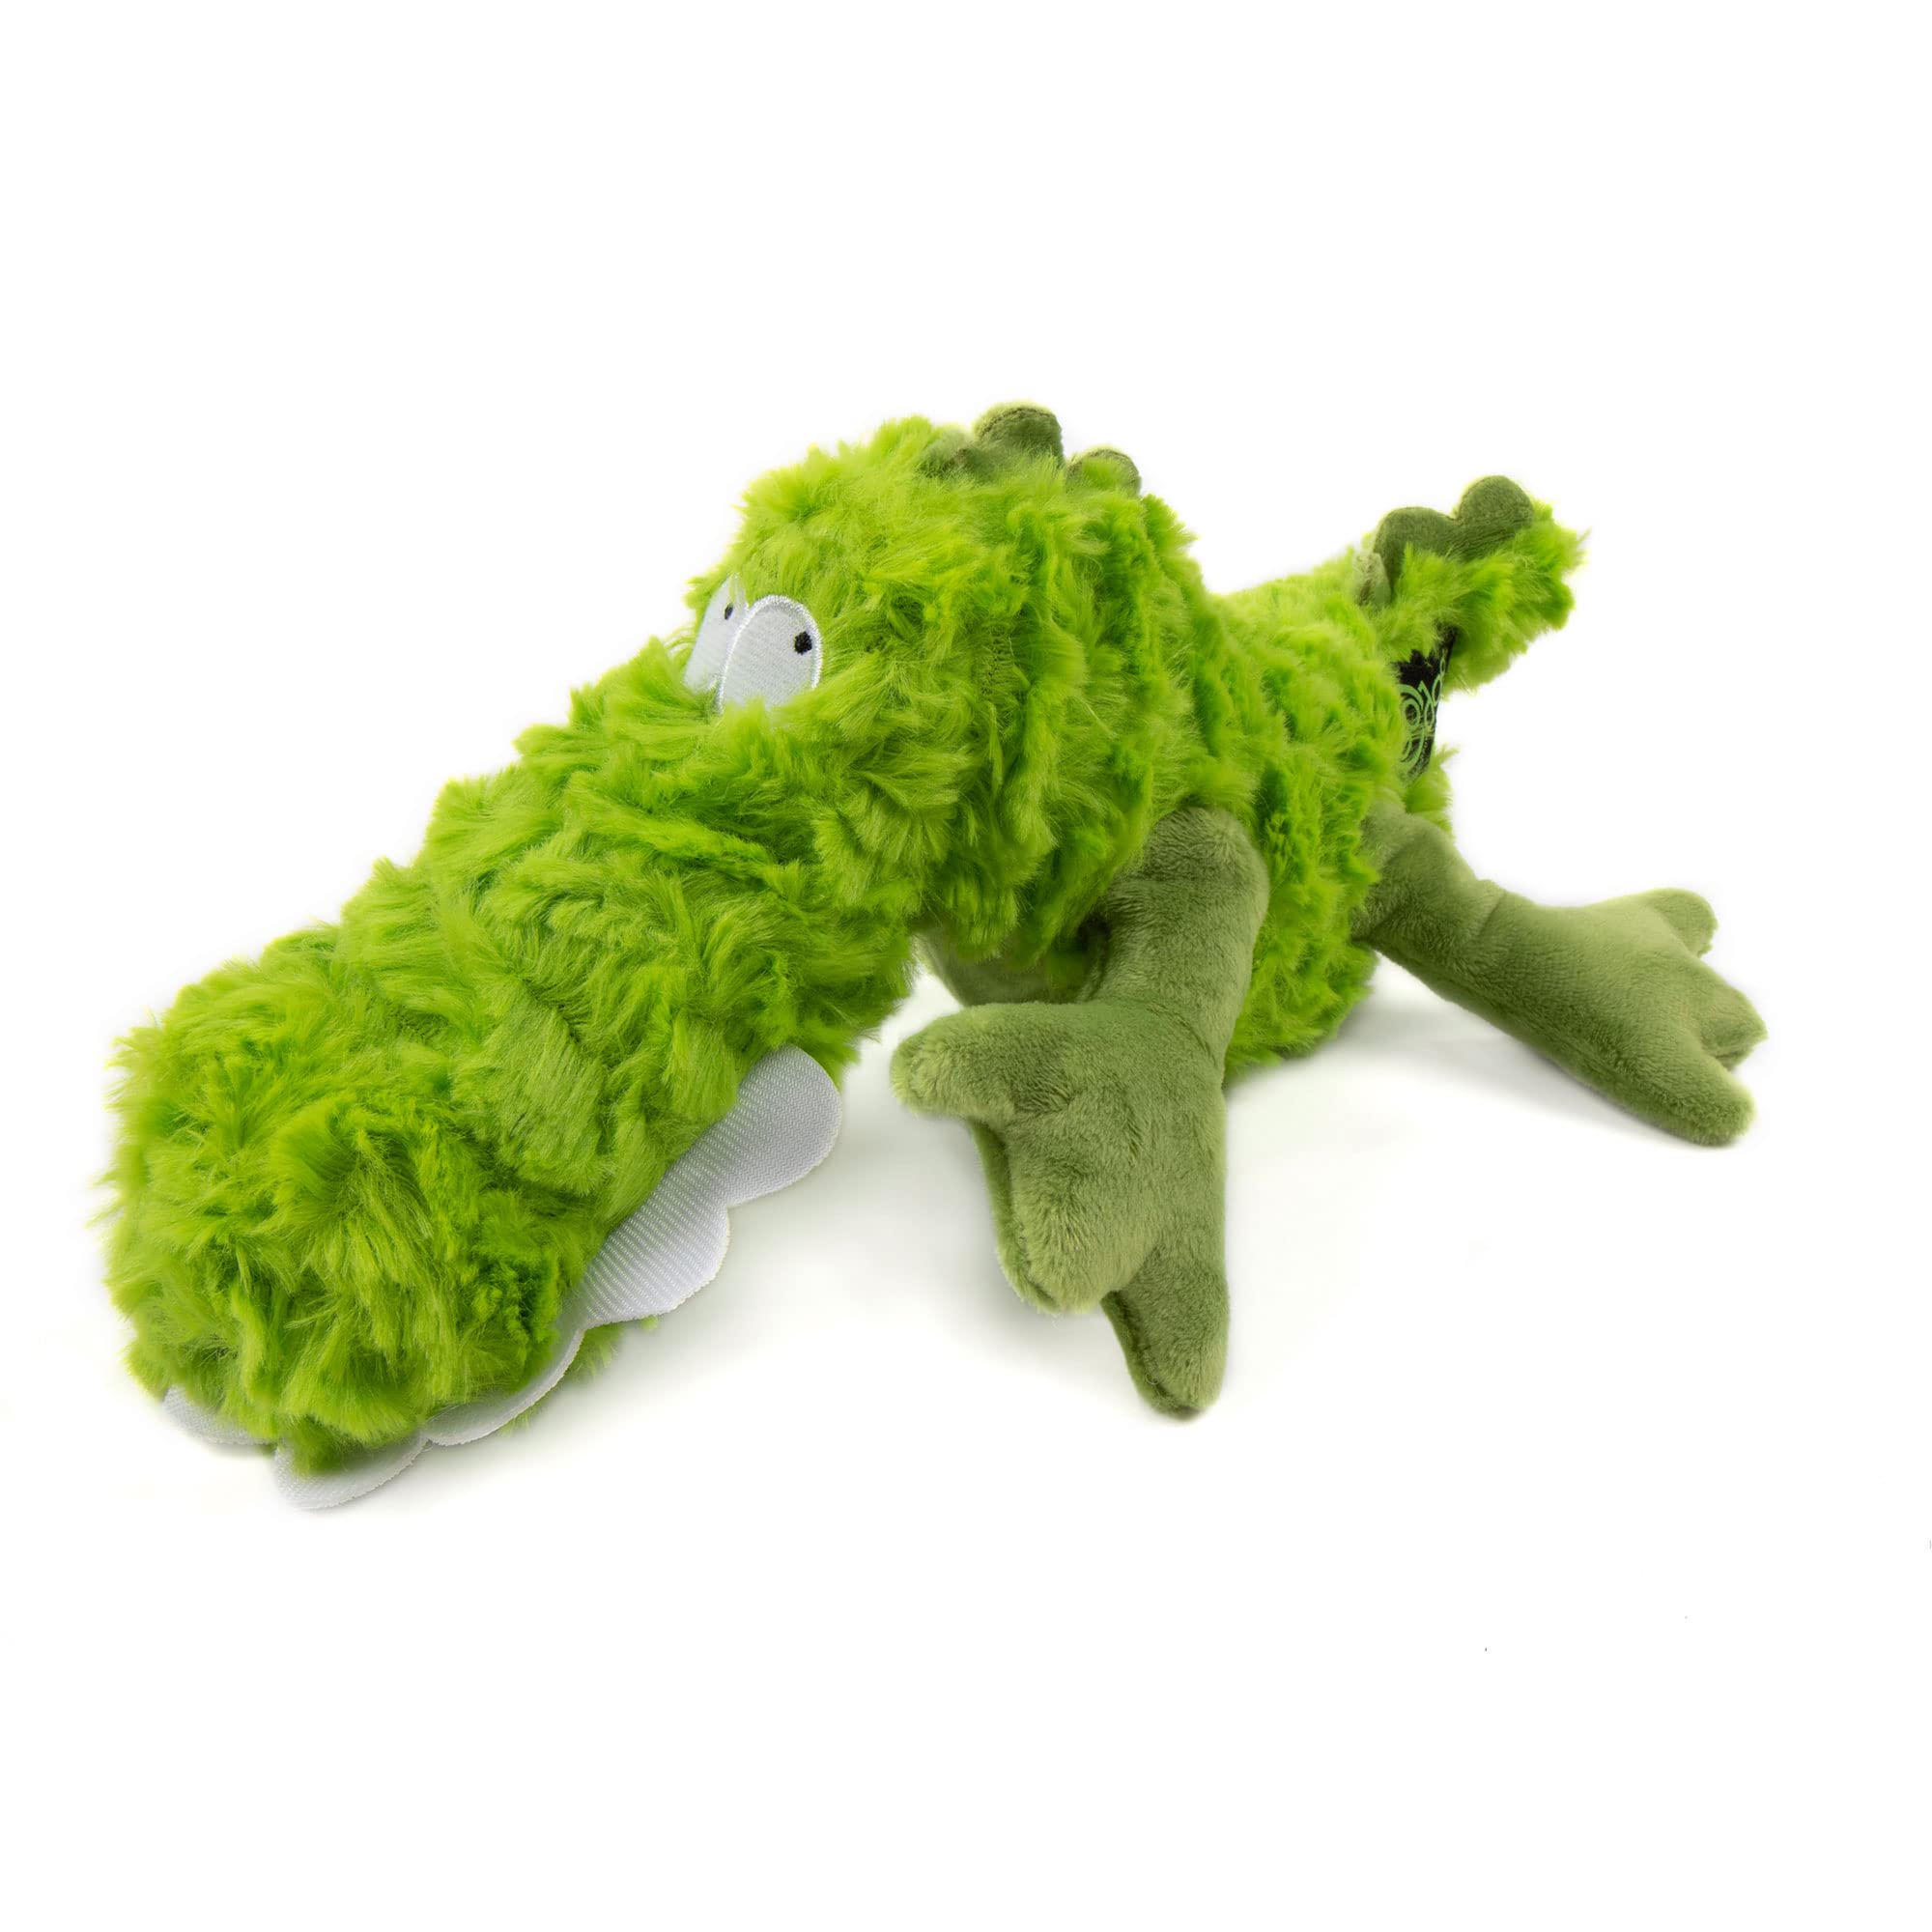 goDog PlayClean Gator Quietschendes Plüsch-Hundespielzeug mit geruchshemmenden ätherischen Ölen, Kauschutz-Technologie, Grün, Größe L